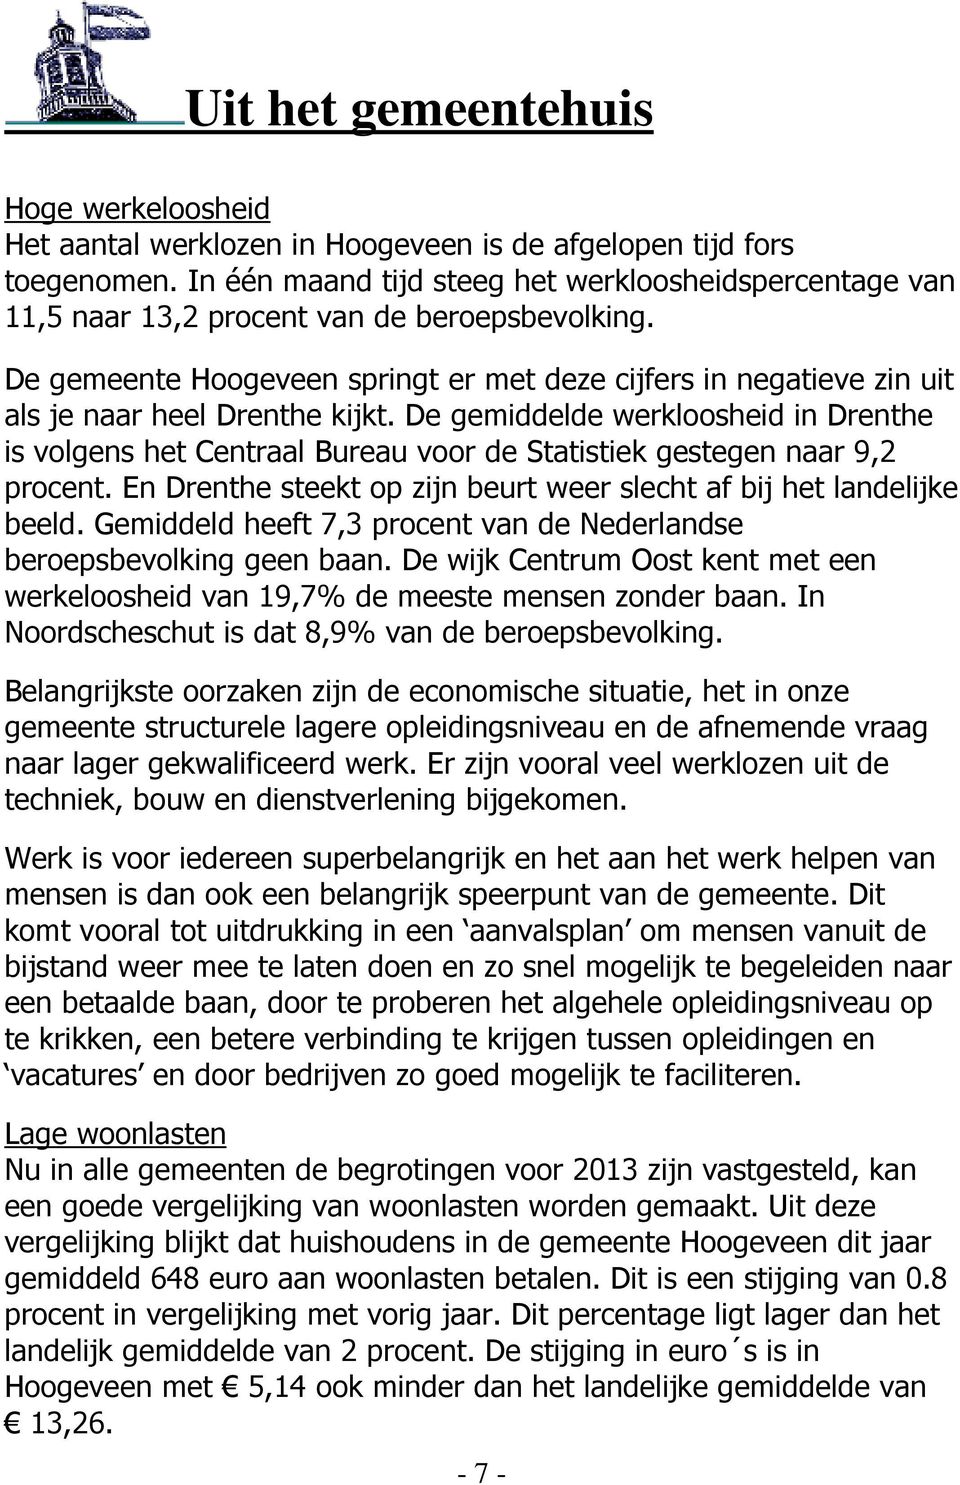 De gemeente Hoogeveen springt er met deze cijfers in negatieve zin uit als je naar heel Drenthe kijkt.